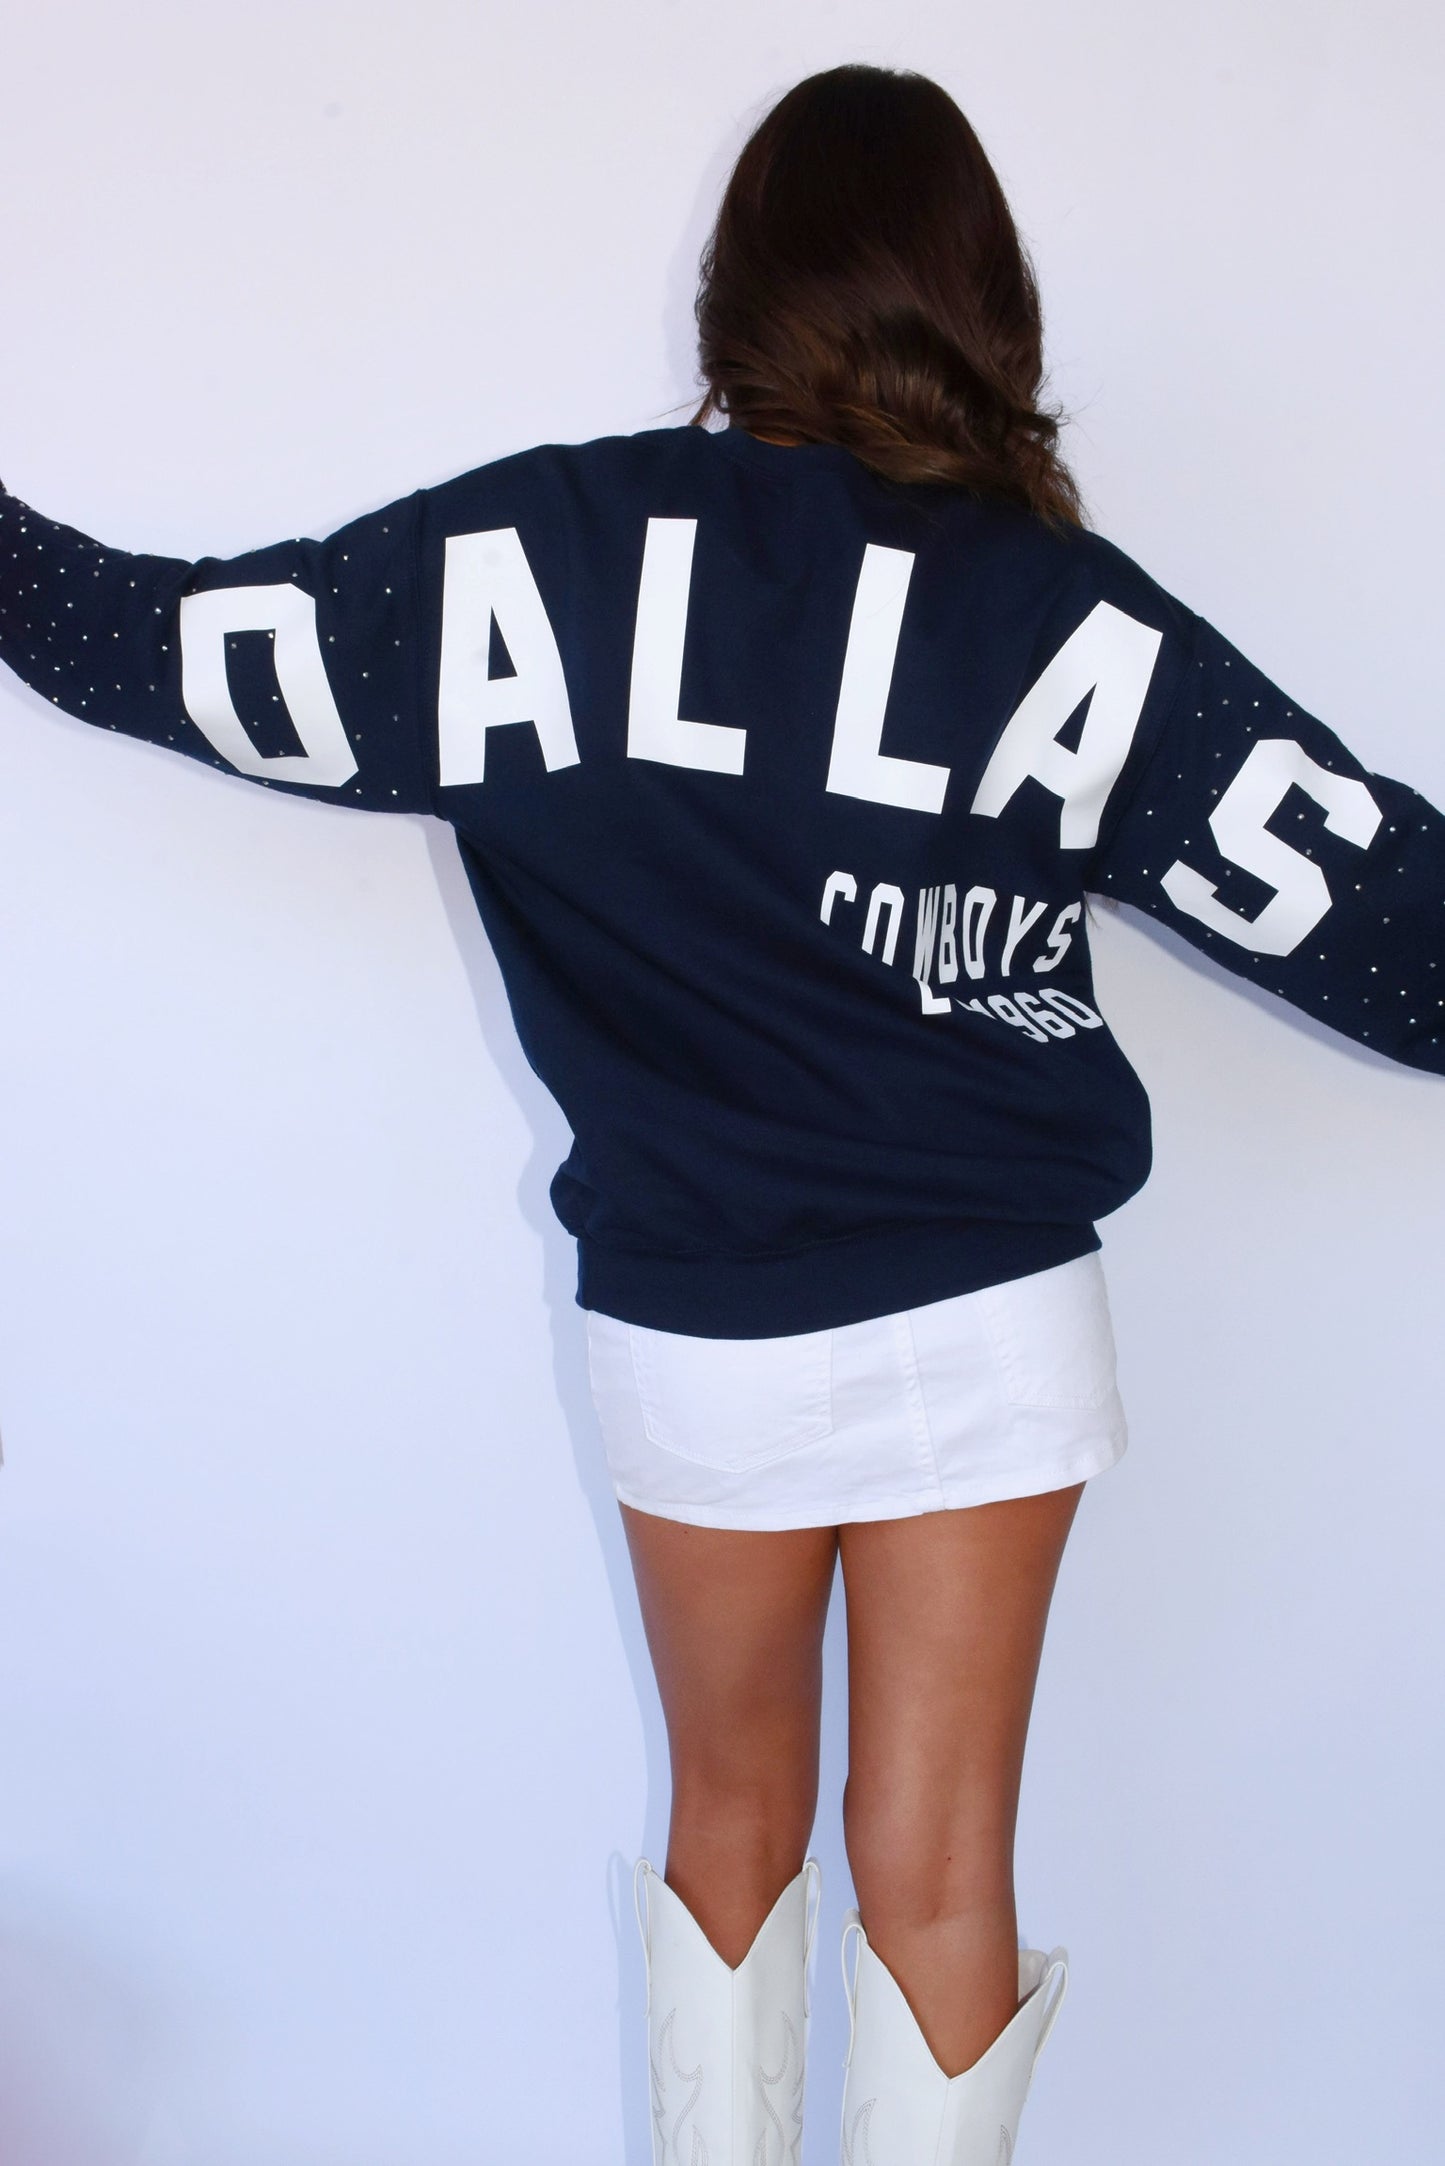 Dallas Cowboys Est. Sweatshirt